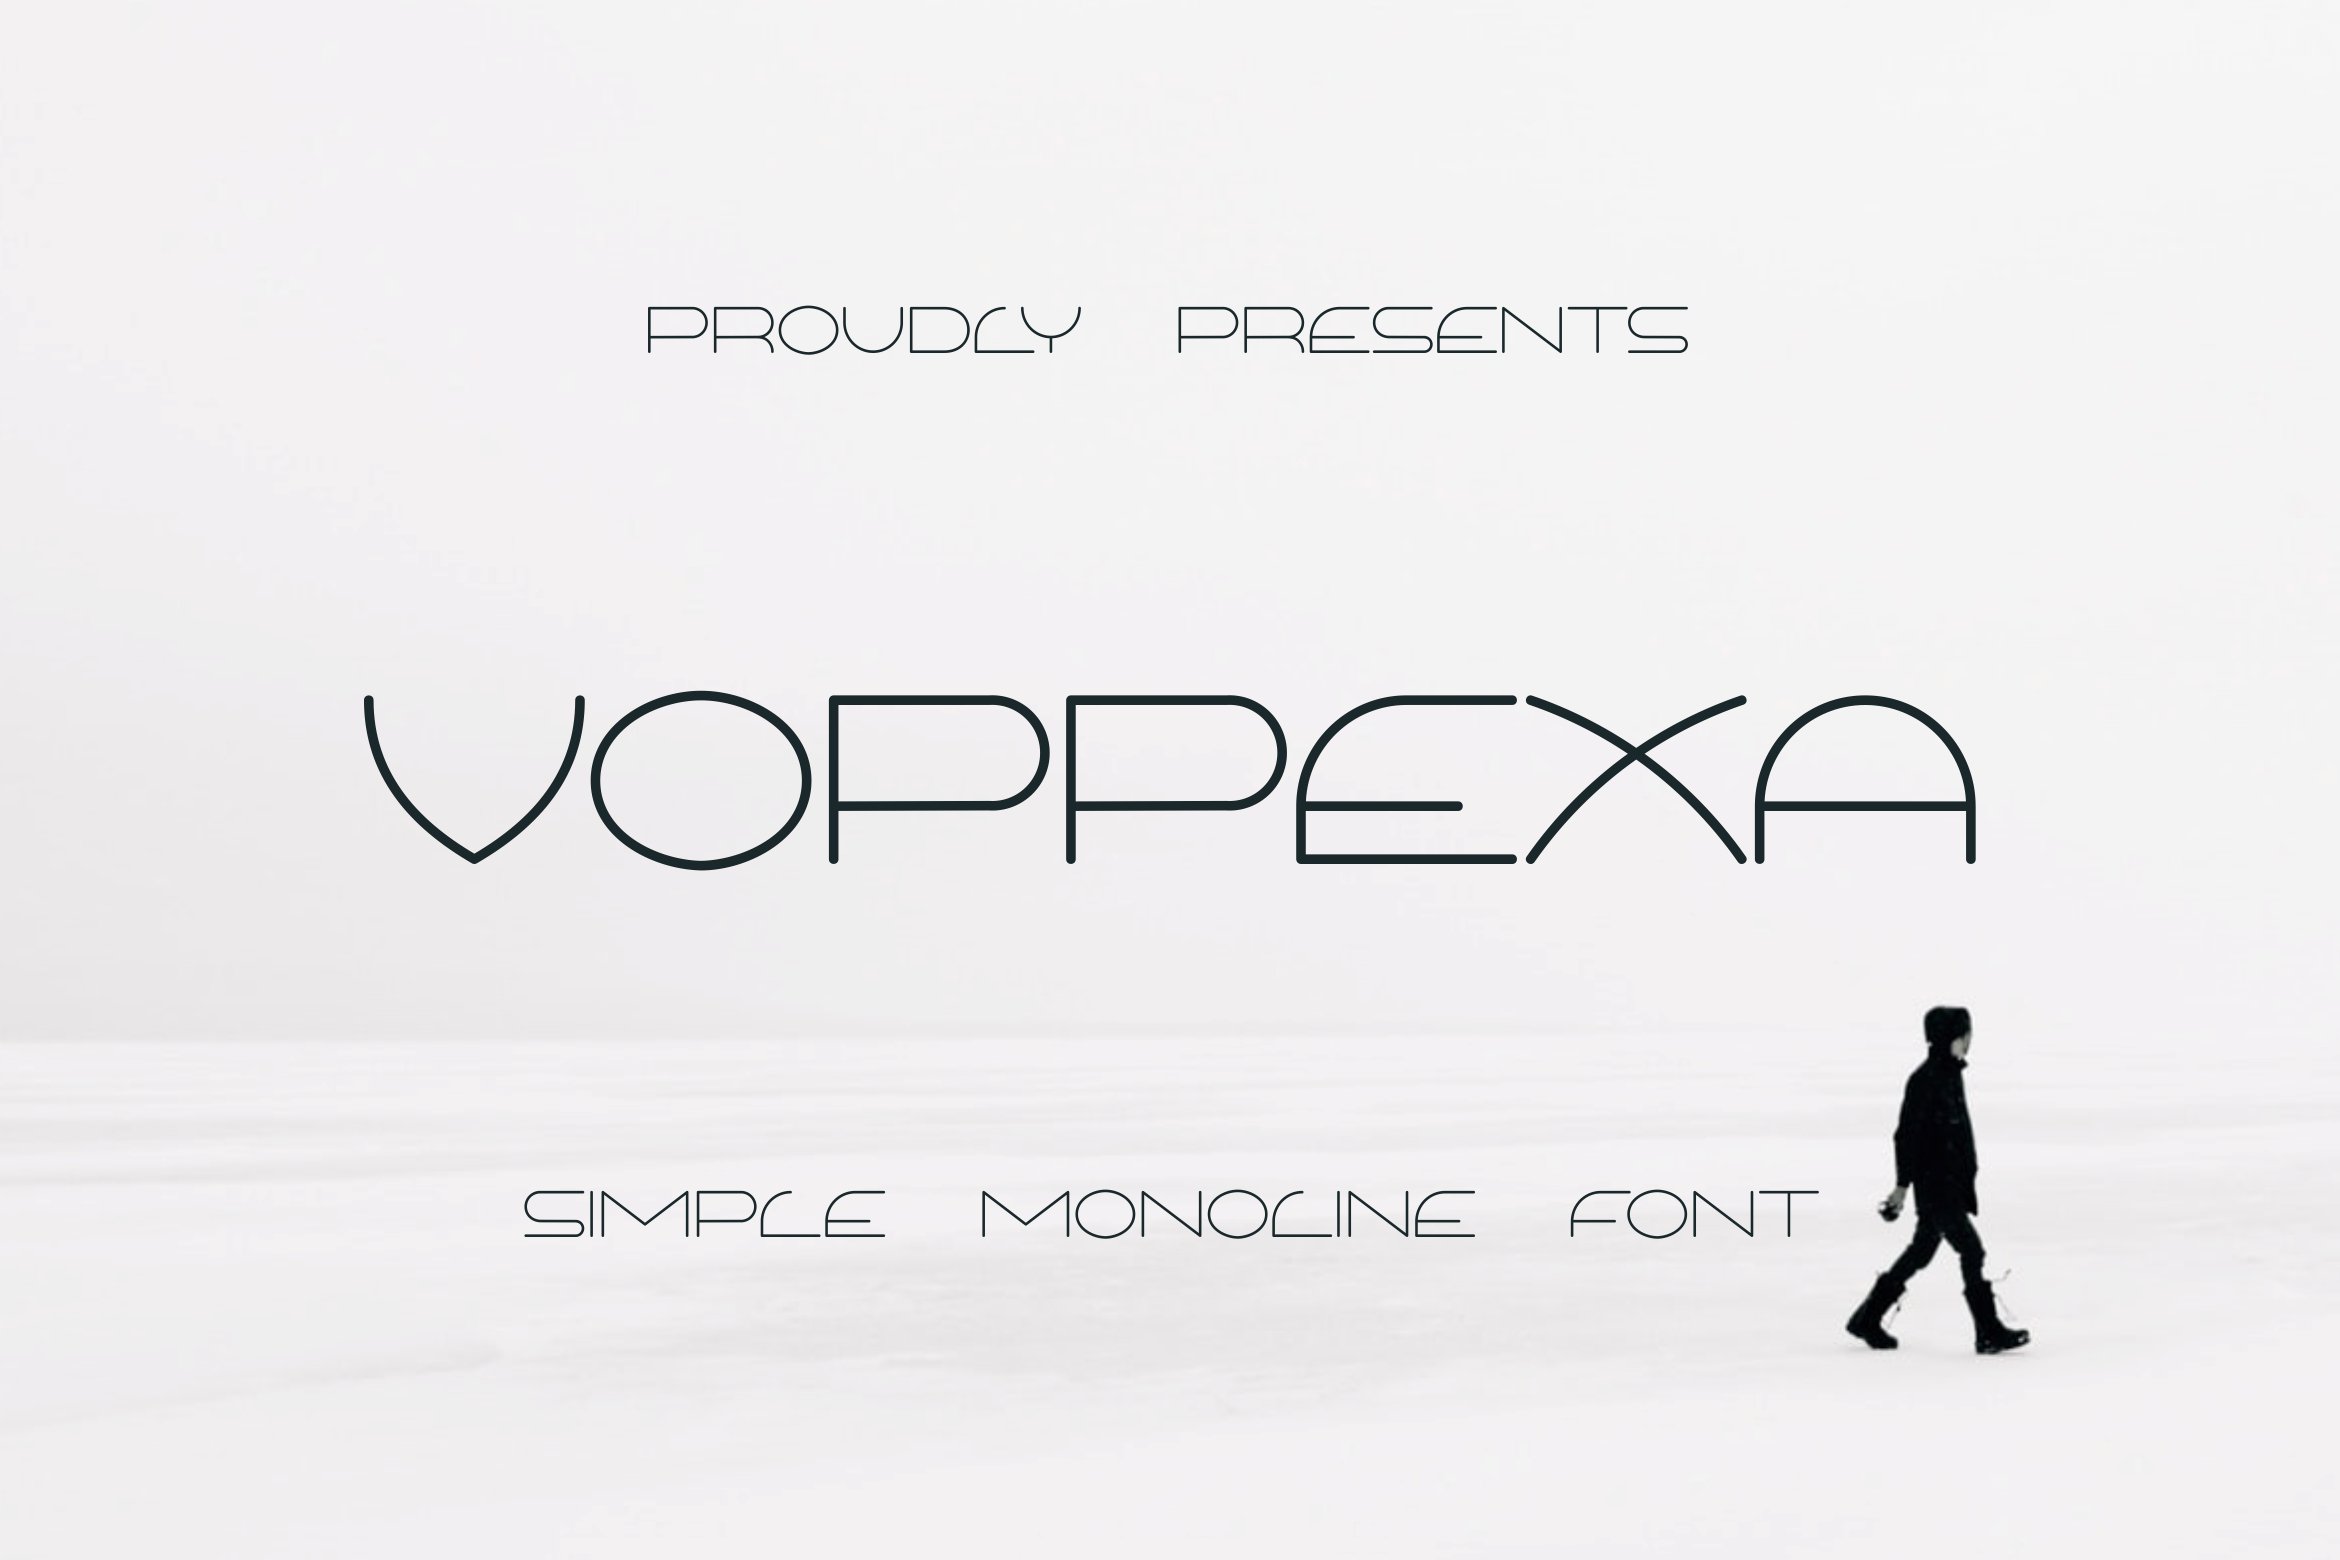 Пример шрифта Voppexa